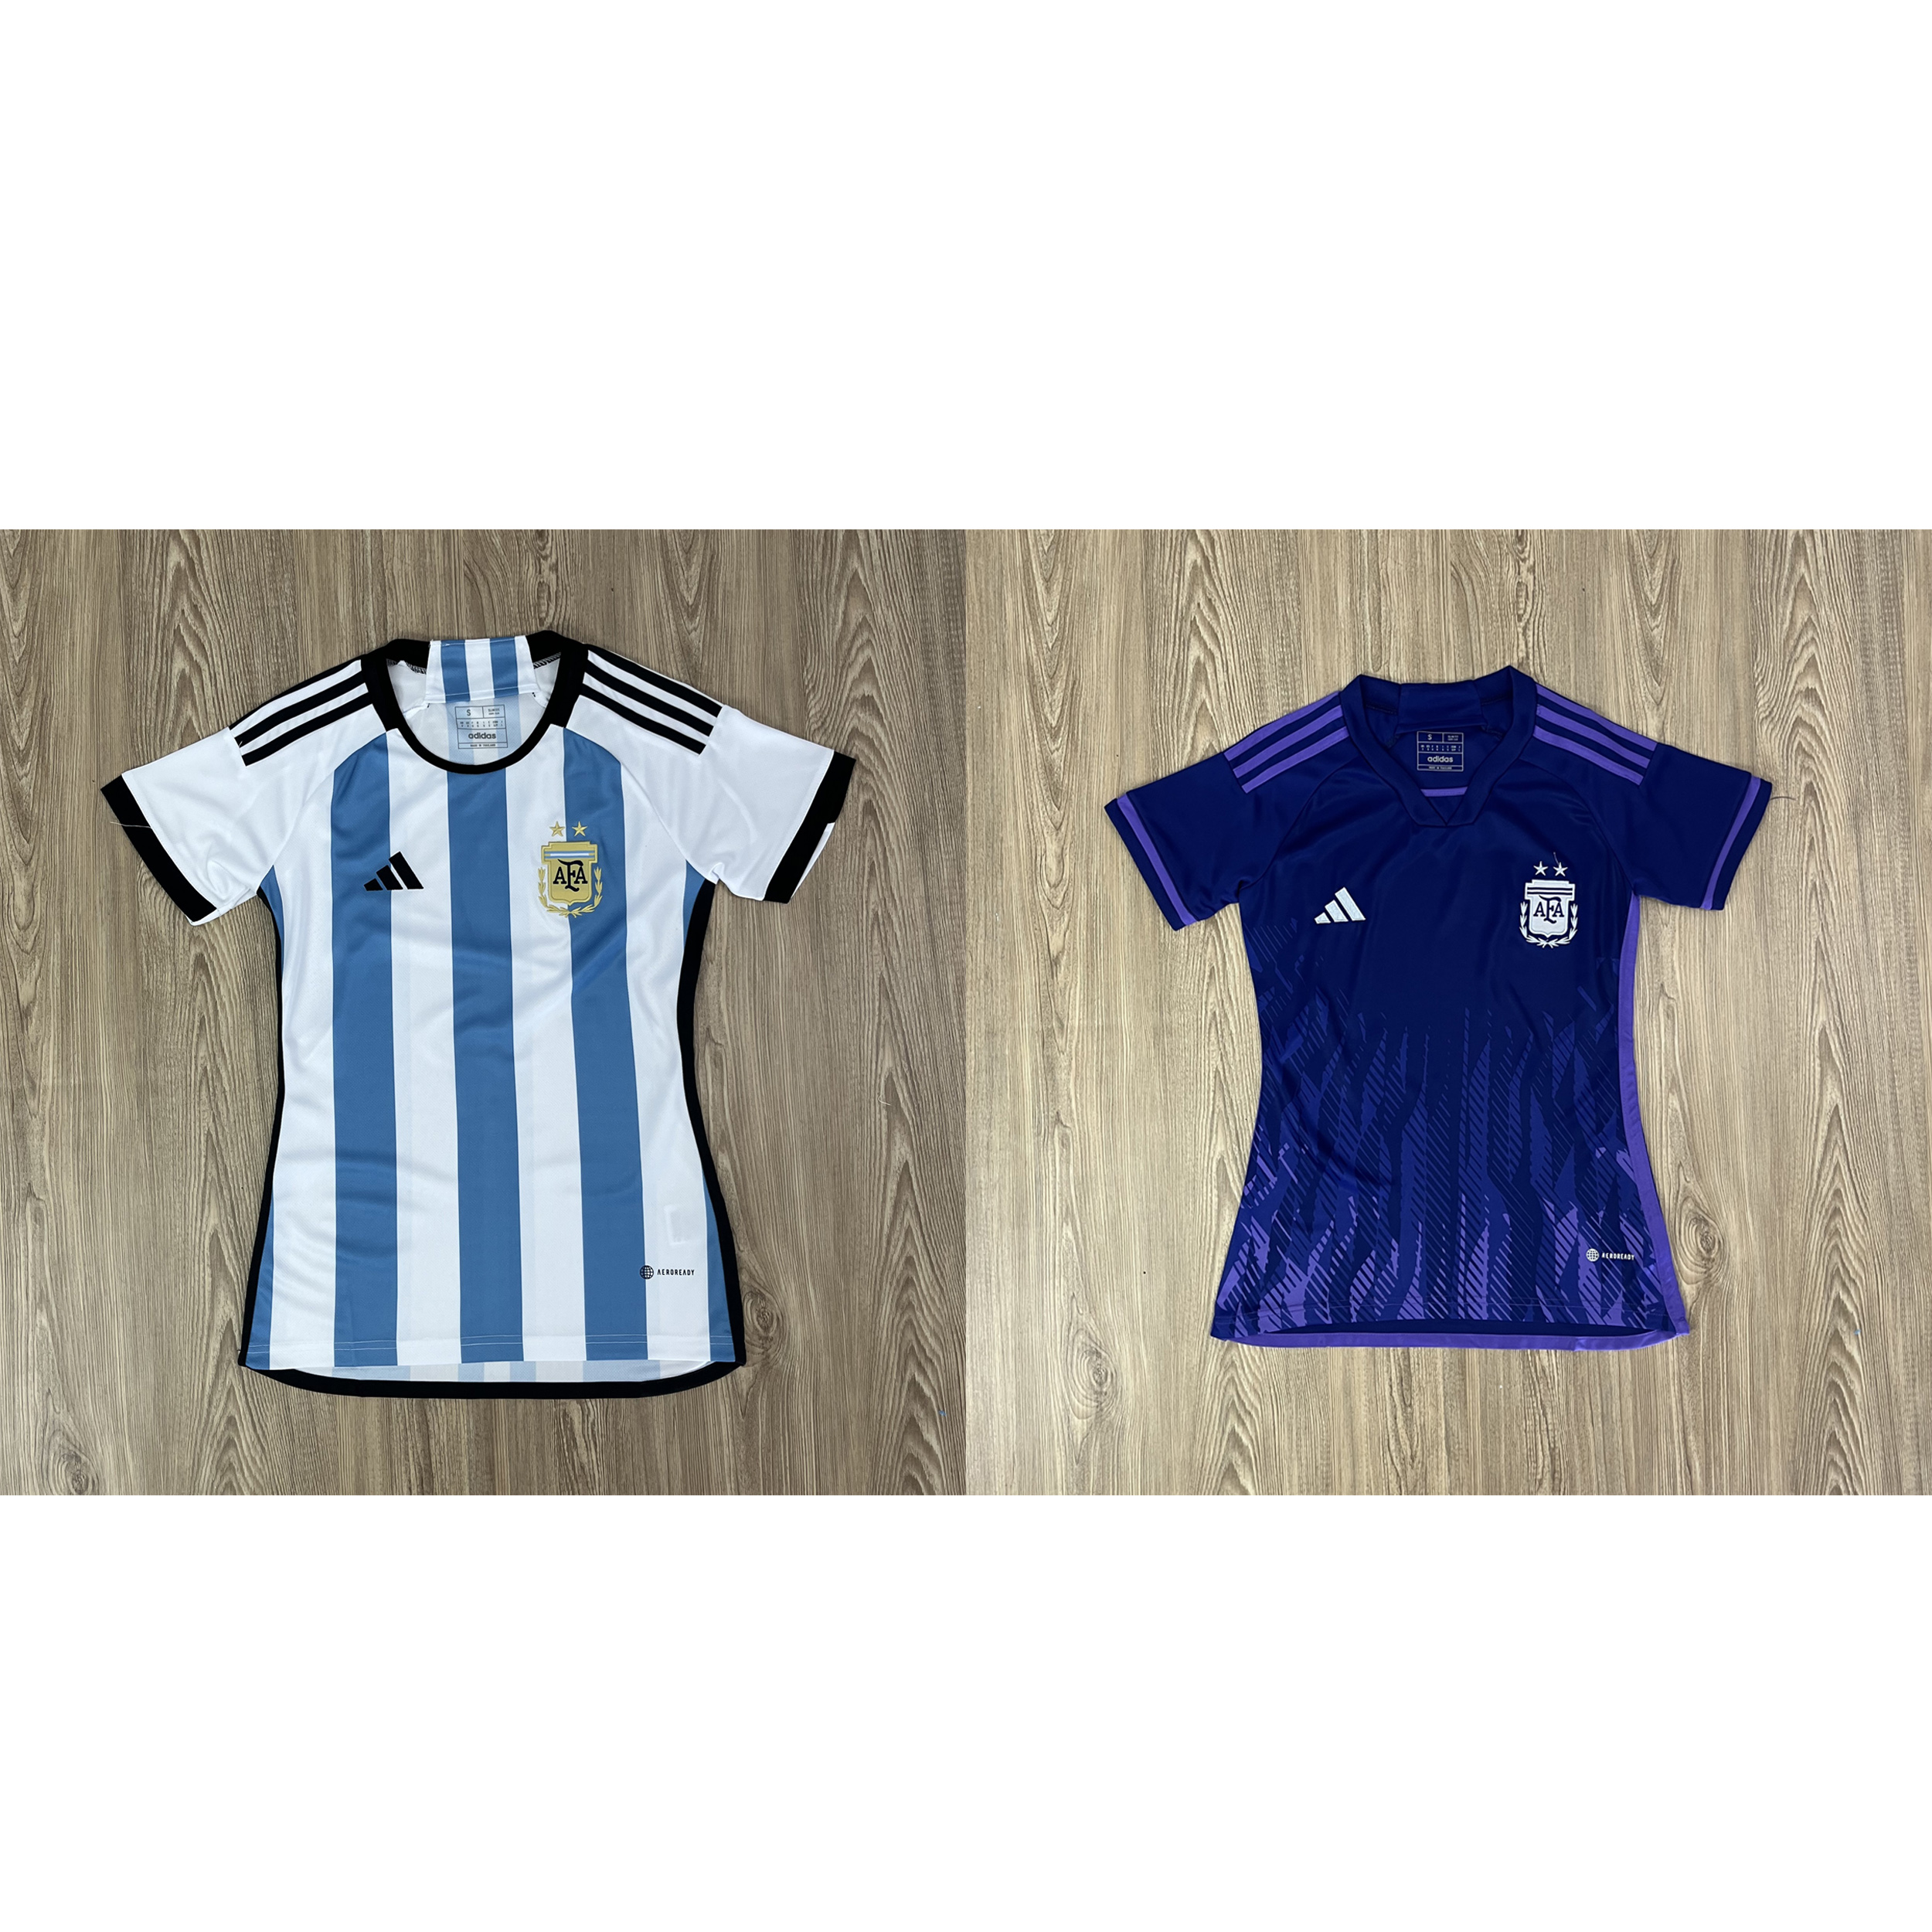 ภาพประกอบของ เสื้อบอลผู้หญิง เสื้อบอลทีม Argentine แบบเดียวกับต้นฉบับ รับประกันคุณภาพ เกรดAAA